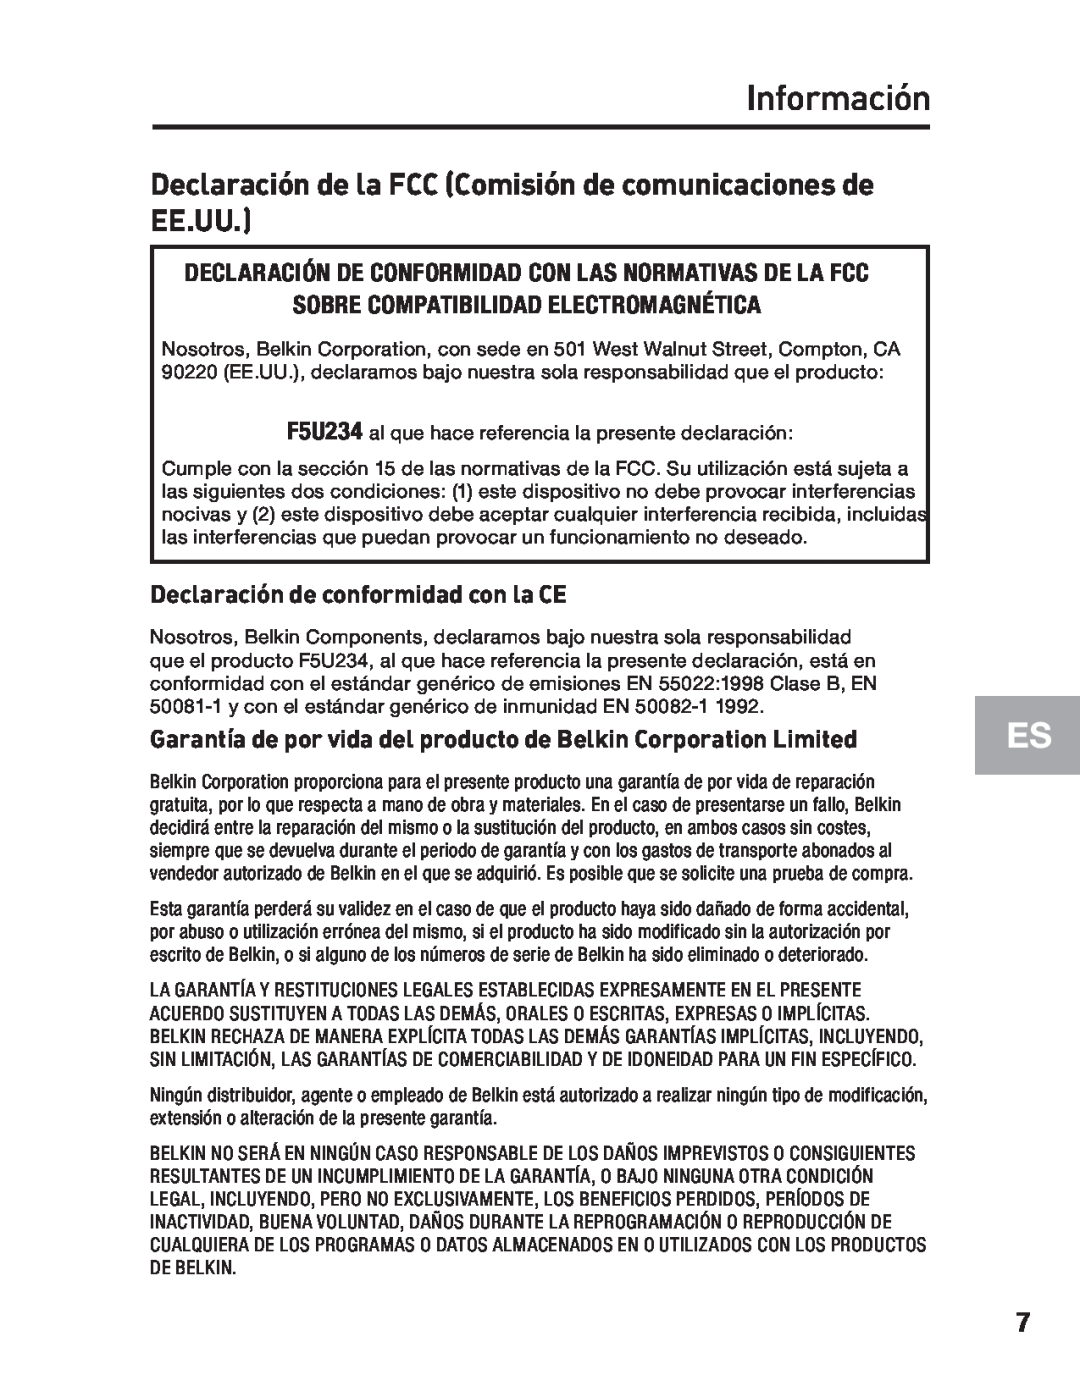 Belkin F5U234 Información, Declaración de la FCC Comisión de comunicaciones de EE.UU, Declaración de conformidad con la CE 